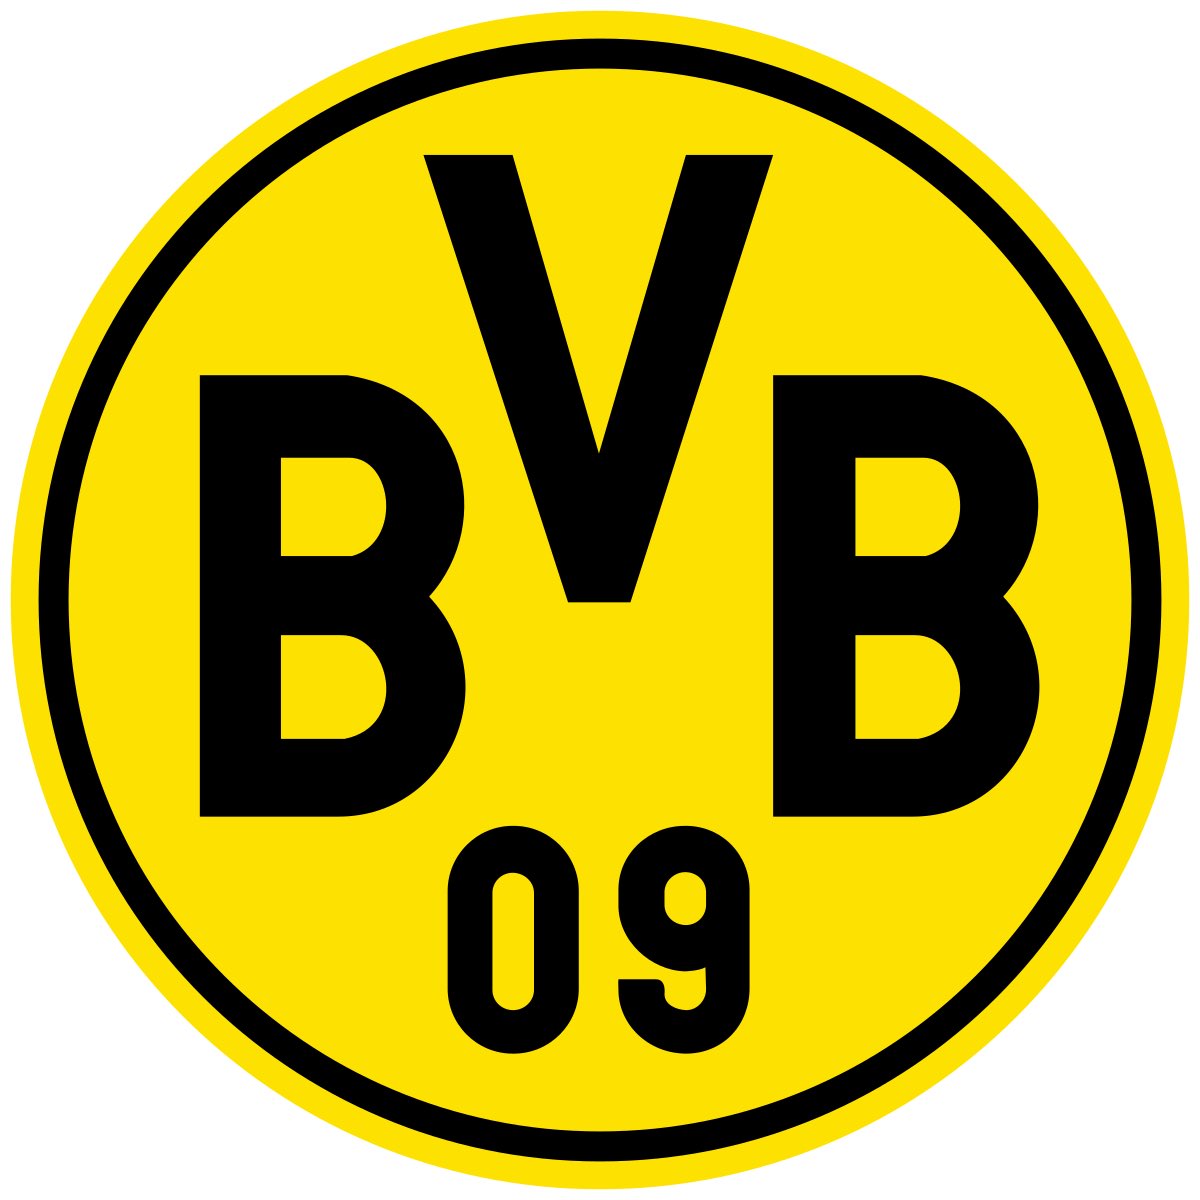 Ballspielverein Borussia 09 e.V. Dortmund sounds better than Fußball-Club Bayern München e.V.